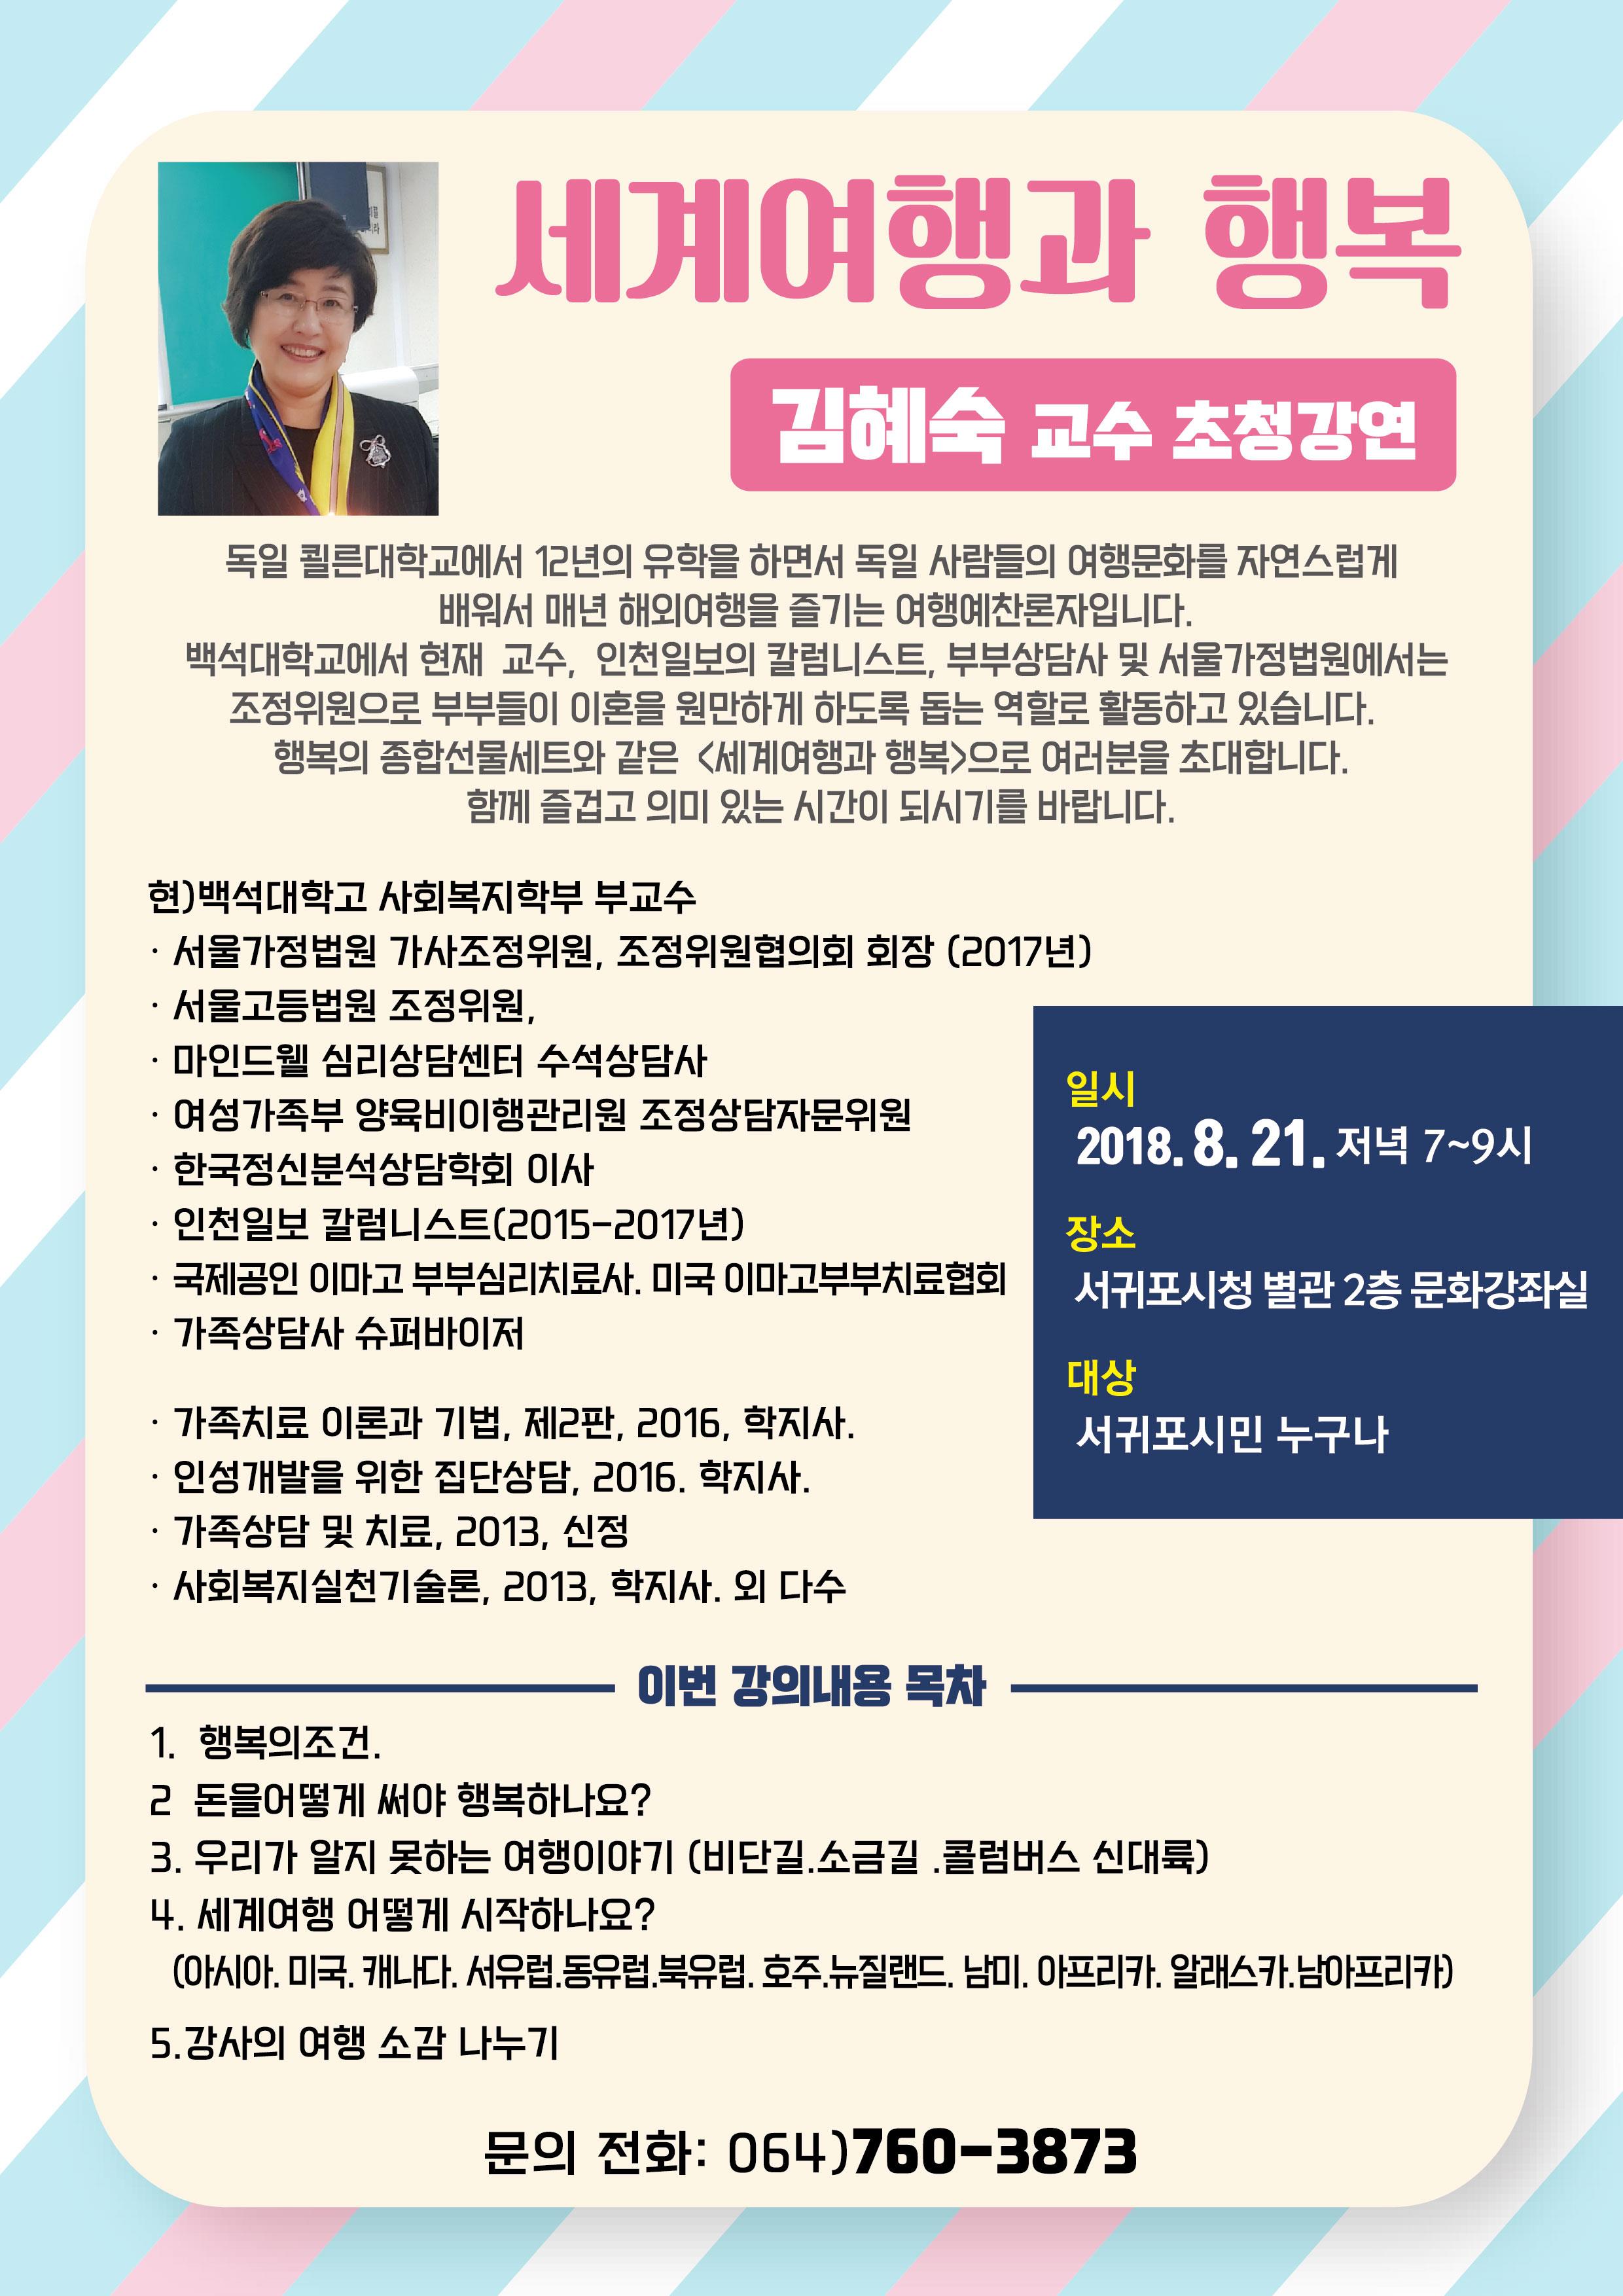 김혜숙 교수 초청! 제3회 글로벌아카데미 개최 알림